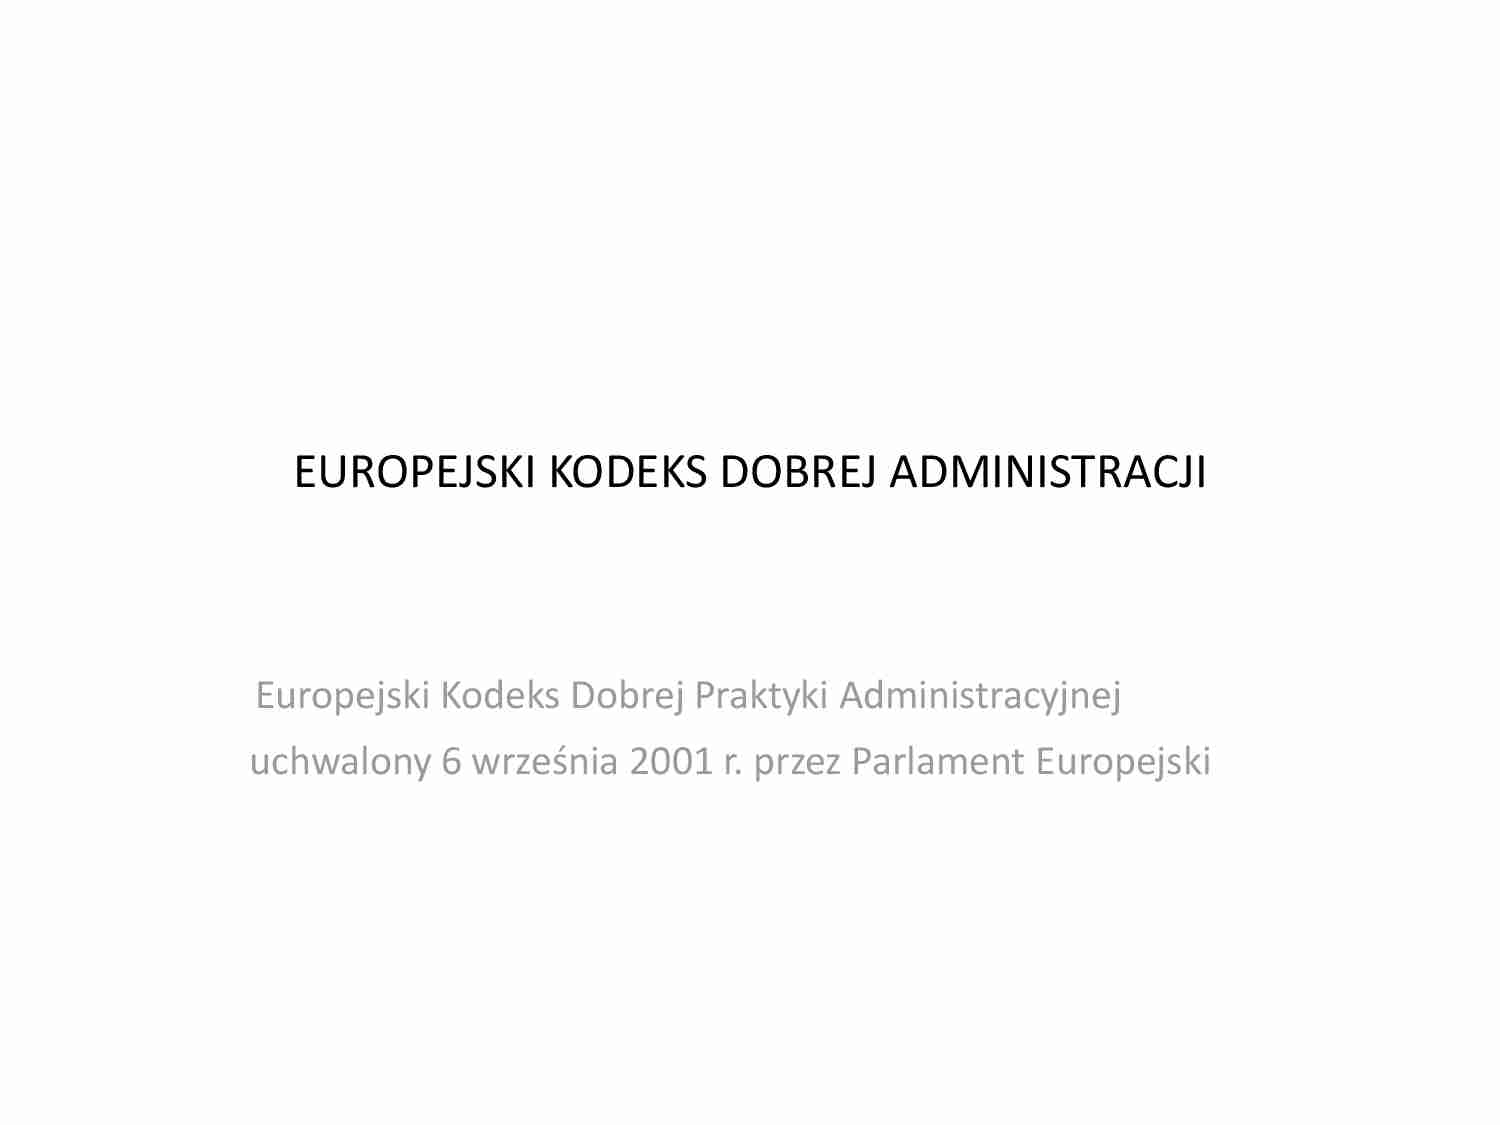 Europejski Kodeks Dobrej Praktyki Administracyjnej - strona 1